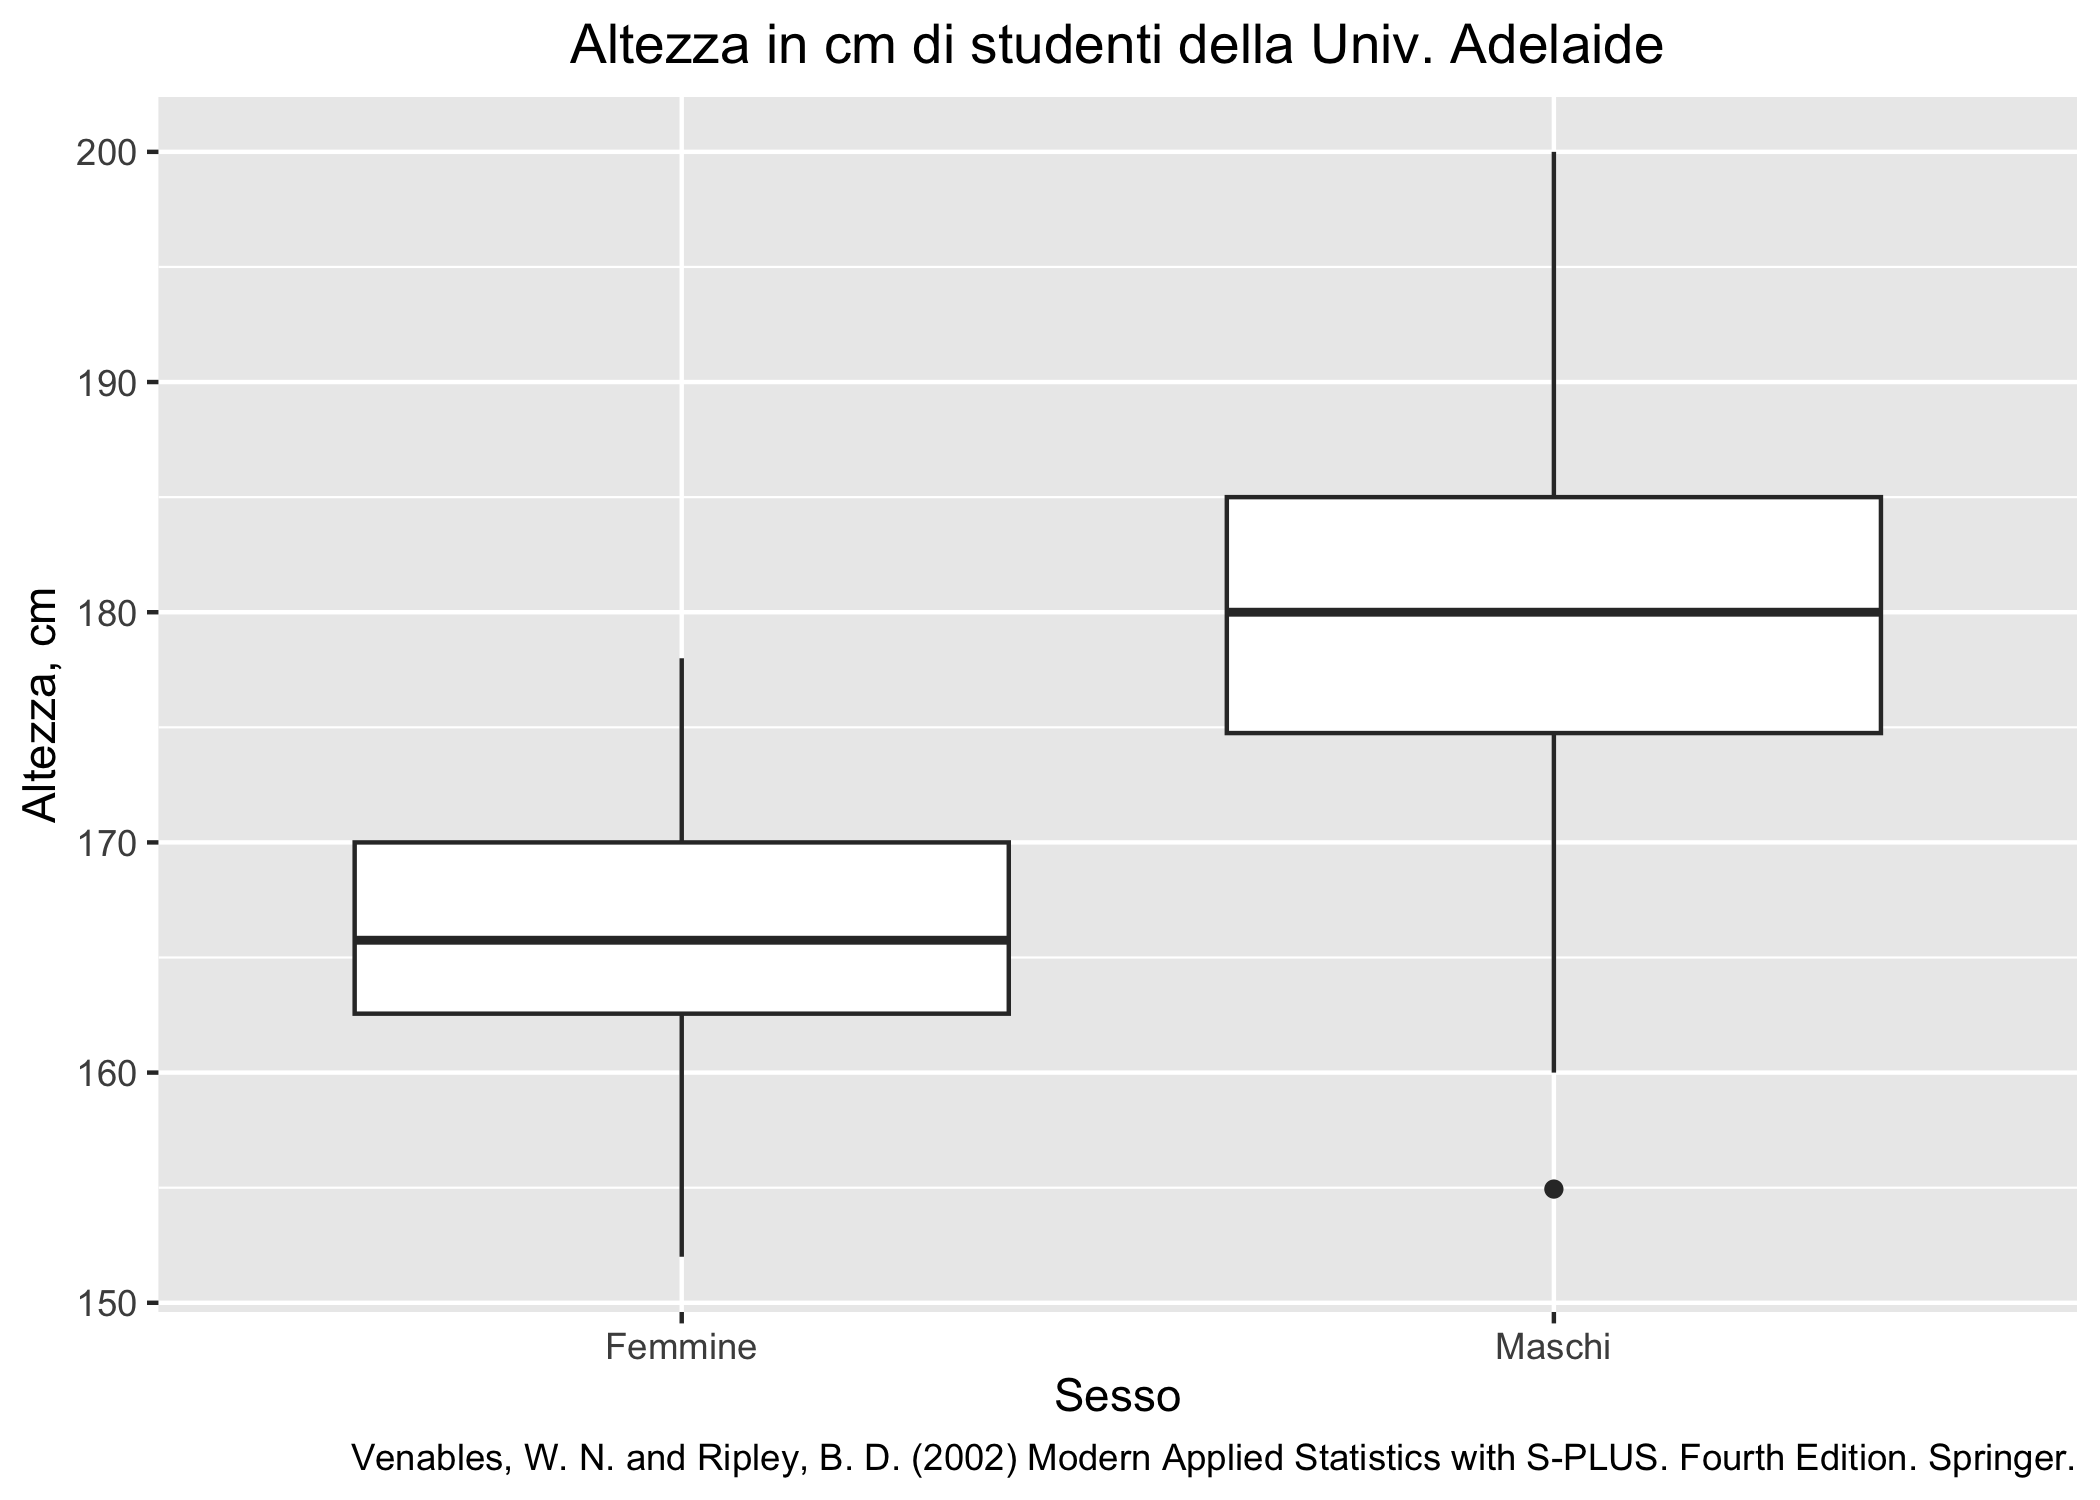 Distribuzione dell'altezza di studenti di psicologia dell'Università di Adelaide.